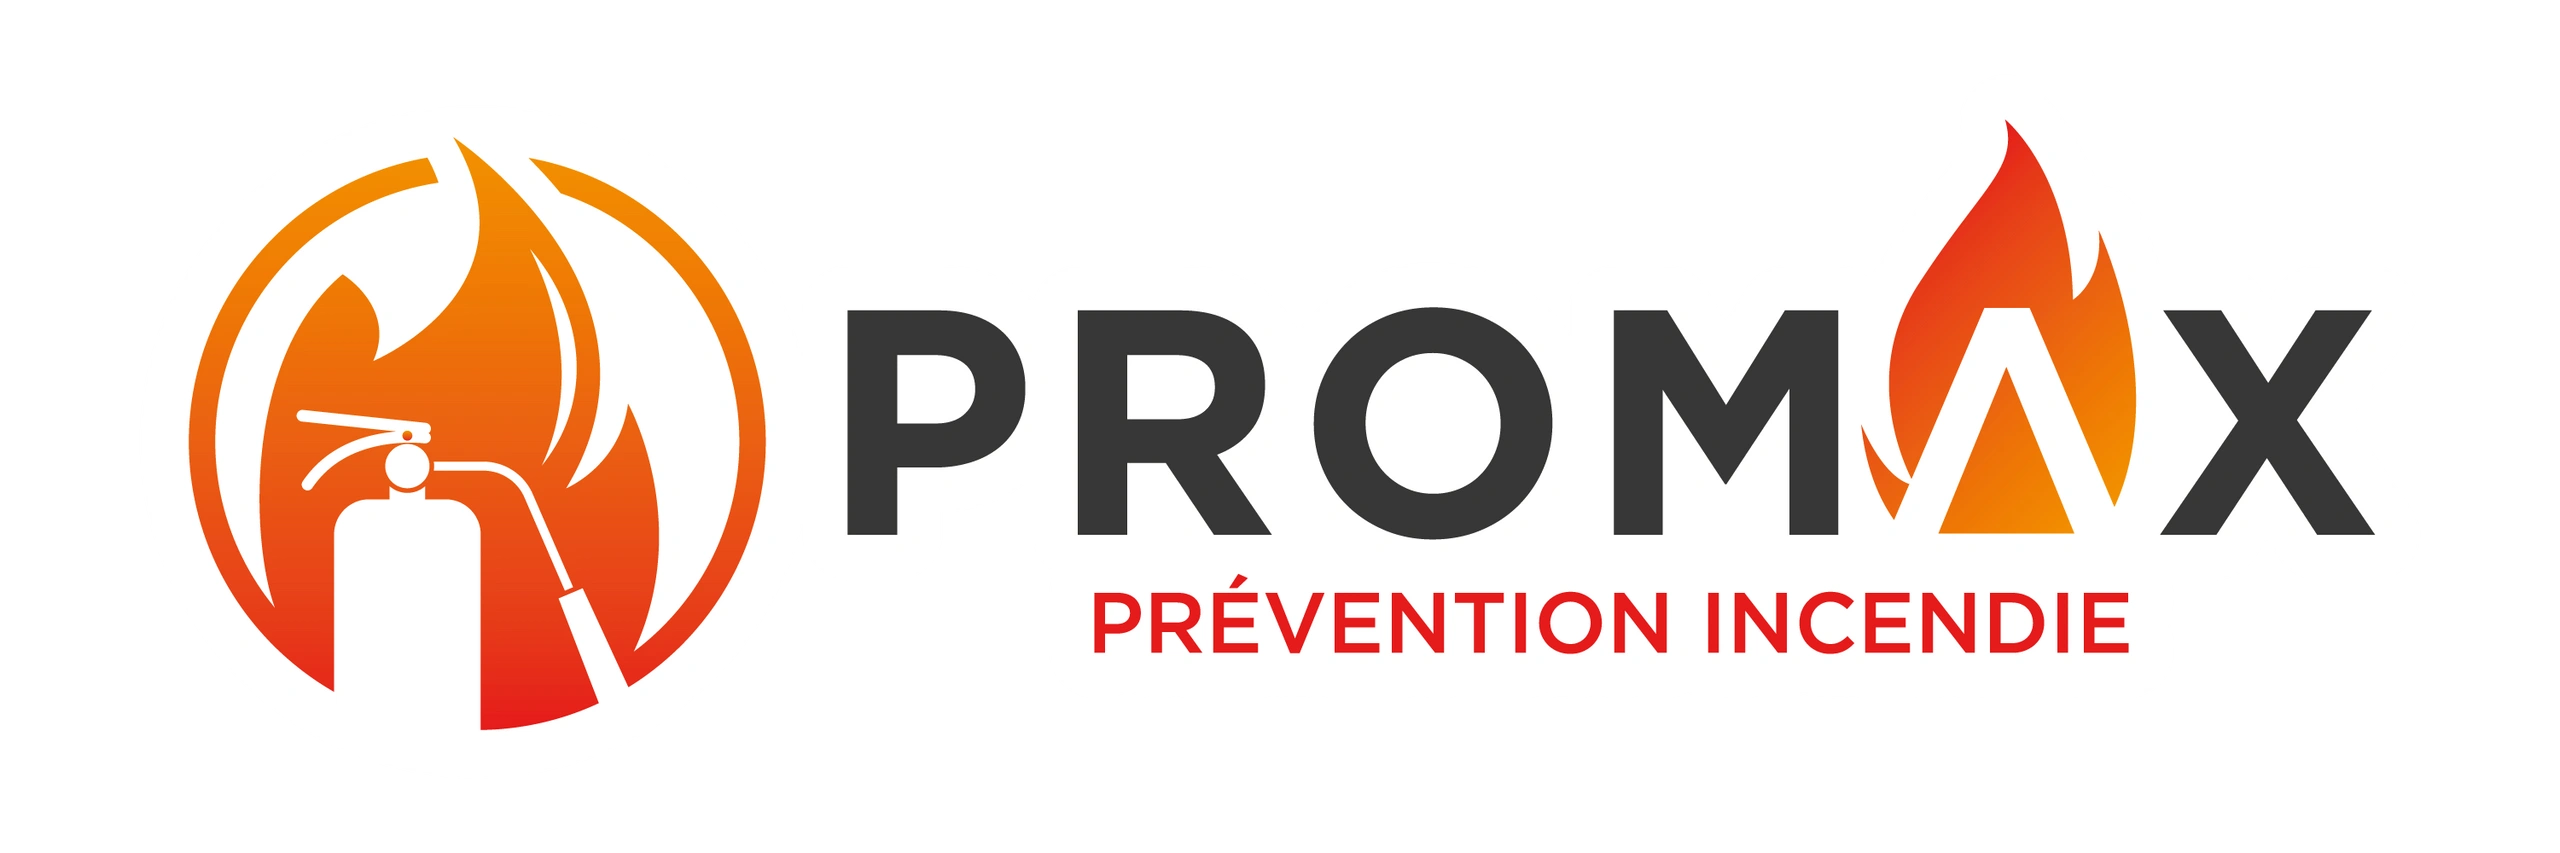 Prevention Incendie Promax, vente, entretien, service extincteurs, CO2 buyeaux, lumieres d'urgence 